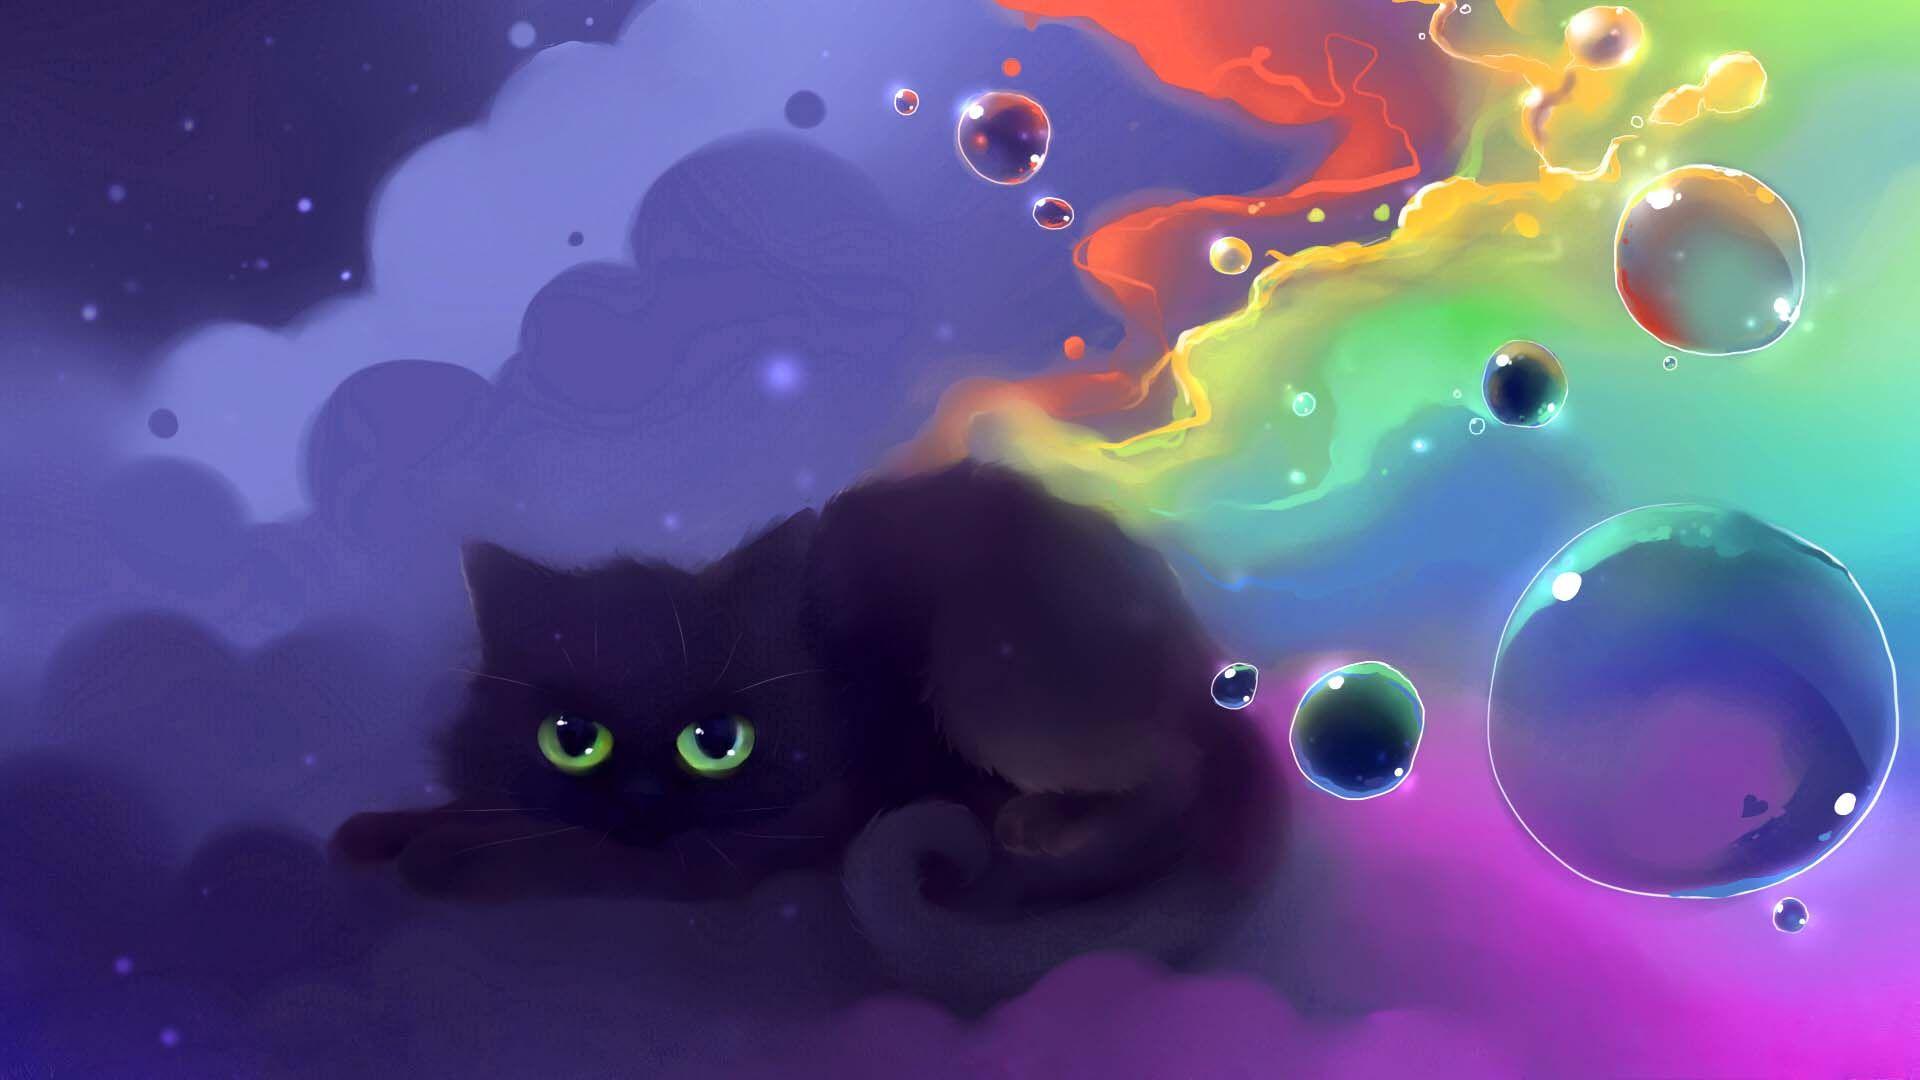 Sleepy Cat Wallpaper  iPhone Android  Desktop Backgrounds